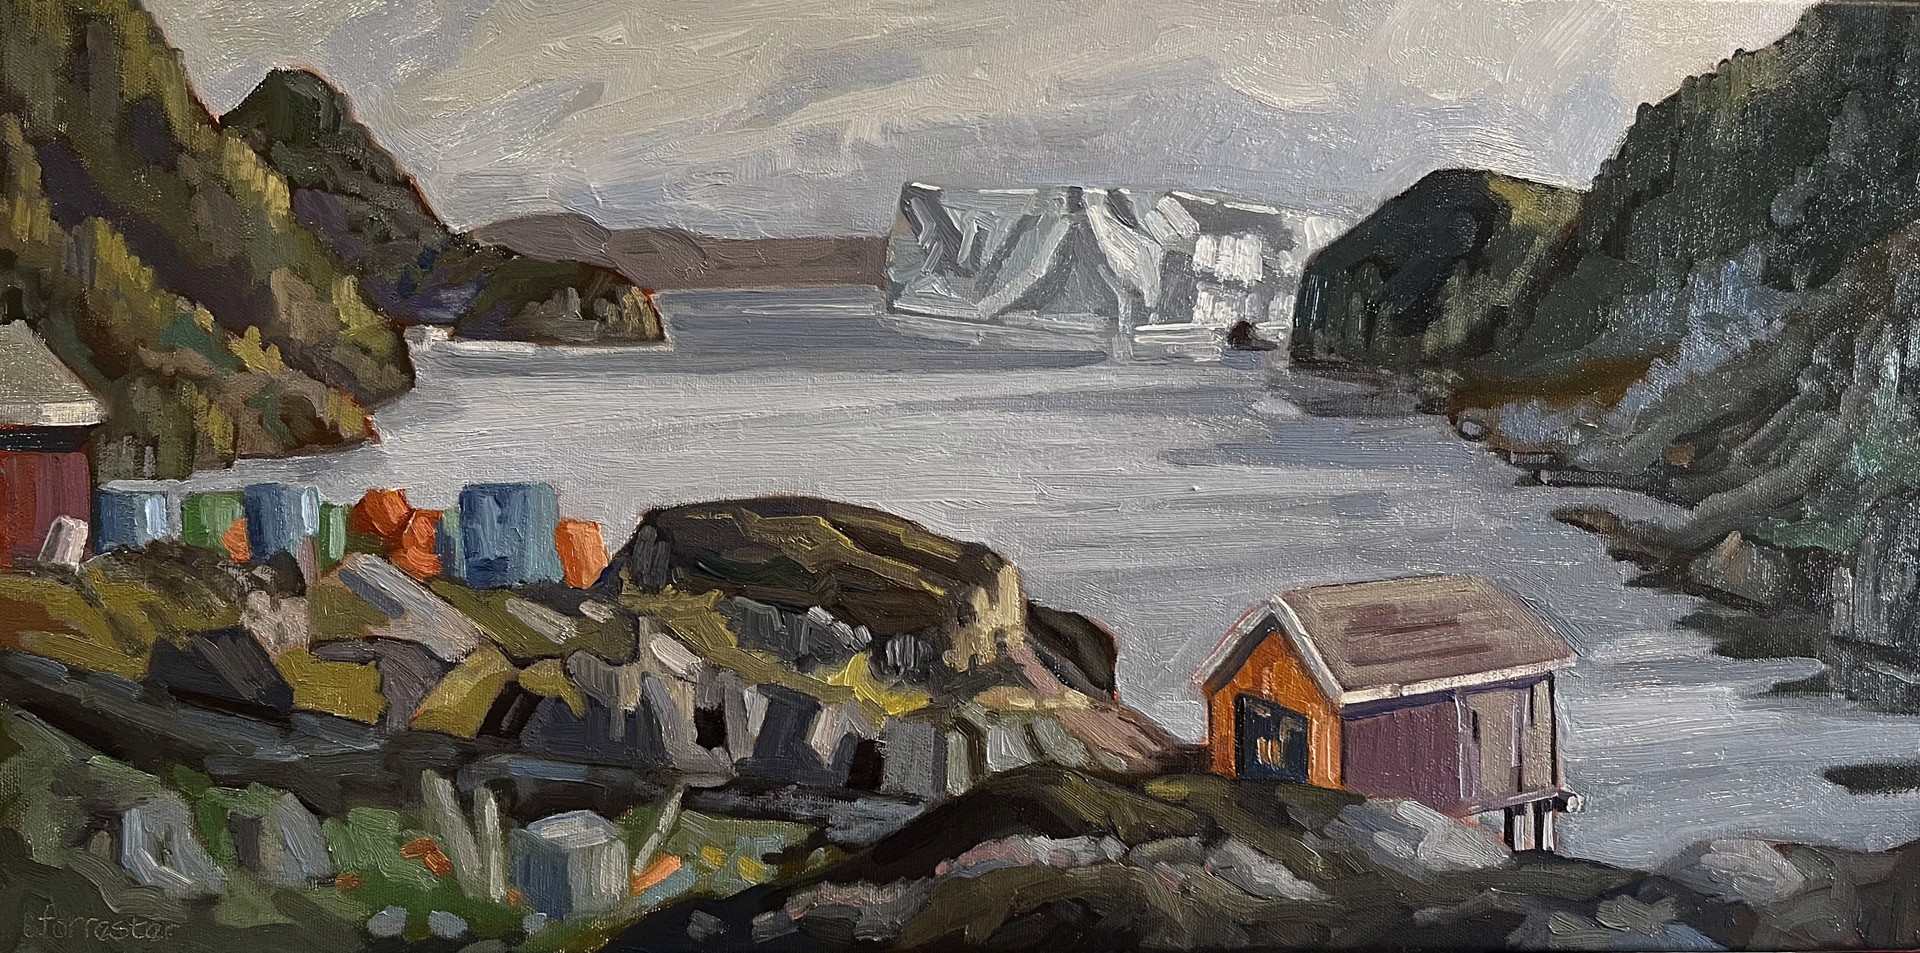 Iceberg Alley, Merritt's Cove NL by Cam Forrester